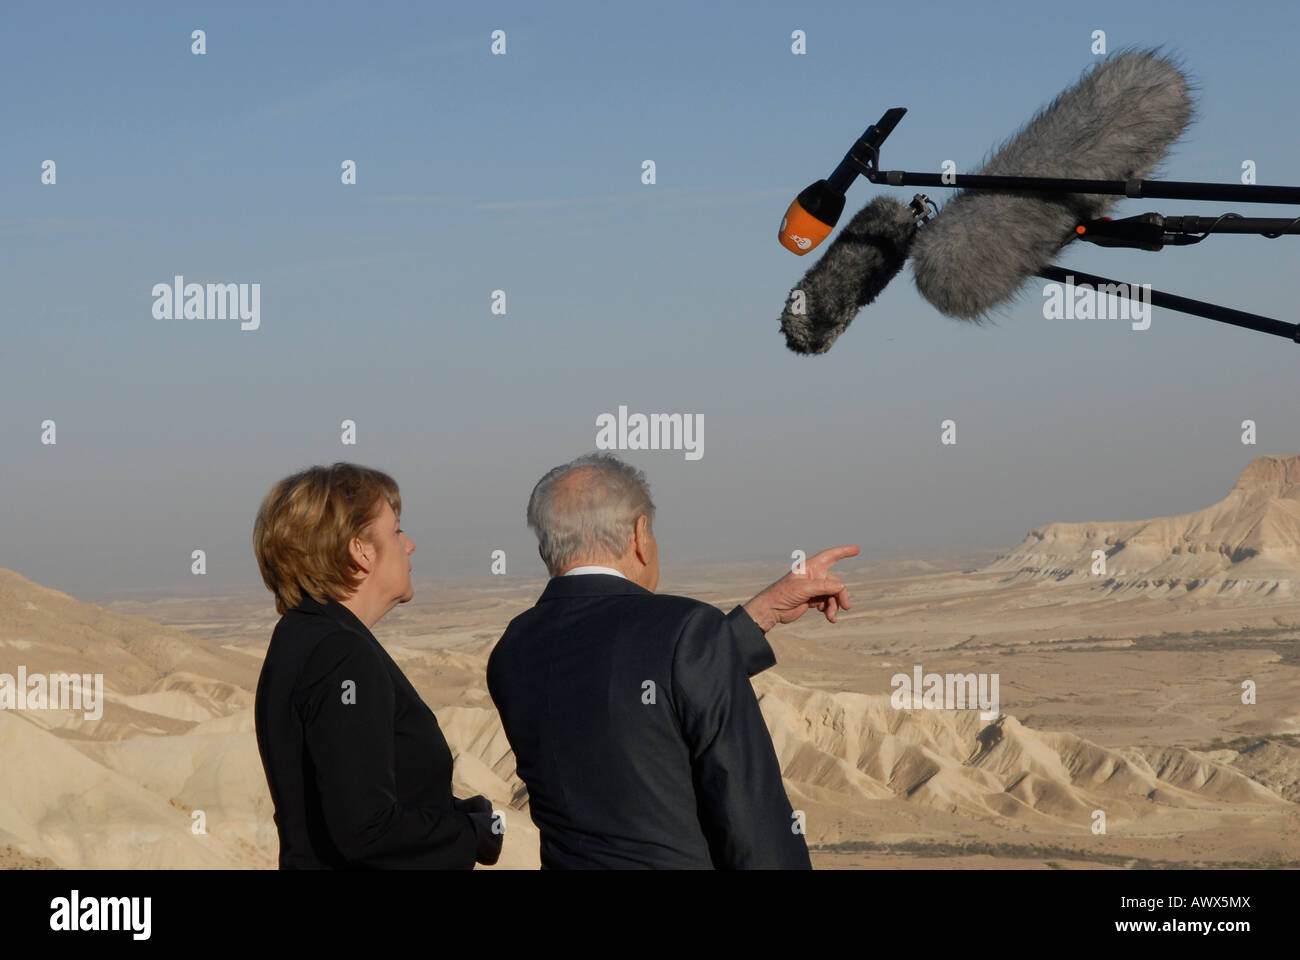 La chancelière allemande Angela Merkel avec le président israélien Shimon Peres dans le désert du Néguev, Israël Banque D'Images